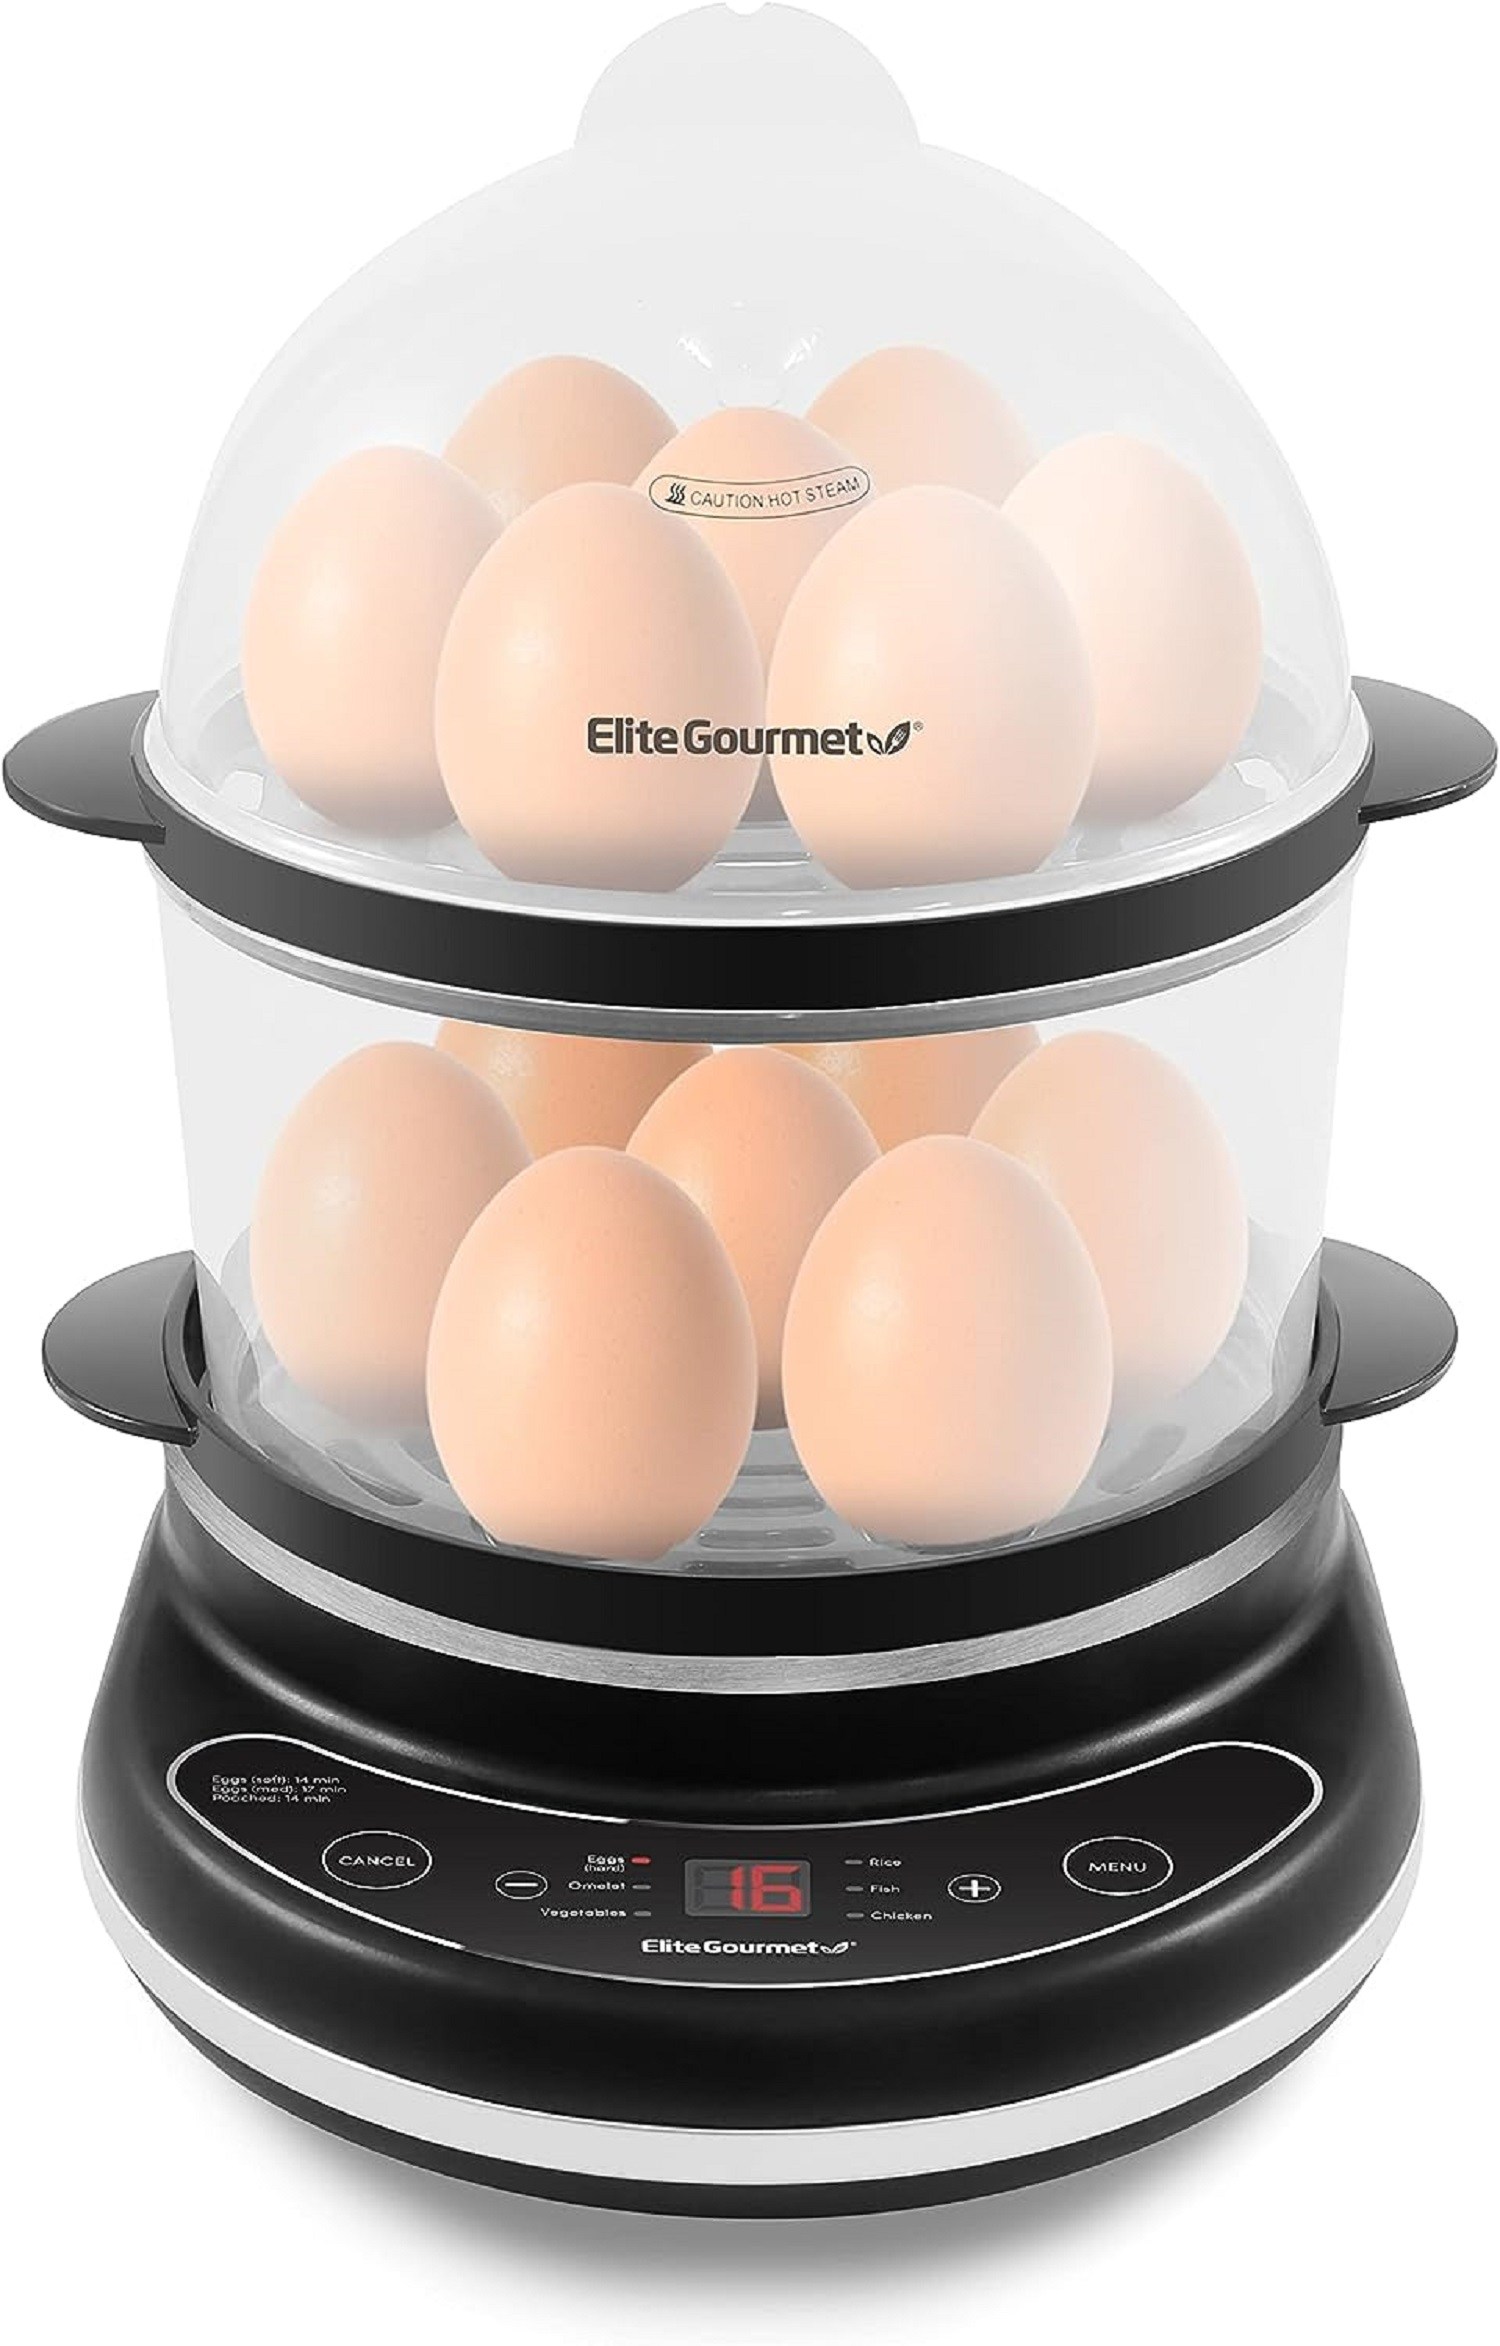 MAVERICKS HENRIETTA HEN Egg Cooker Poaches Boils Soft/ Hard Chirps When  Cooked